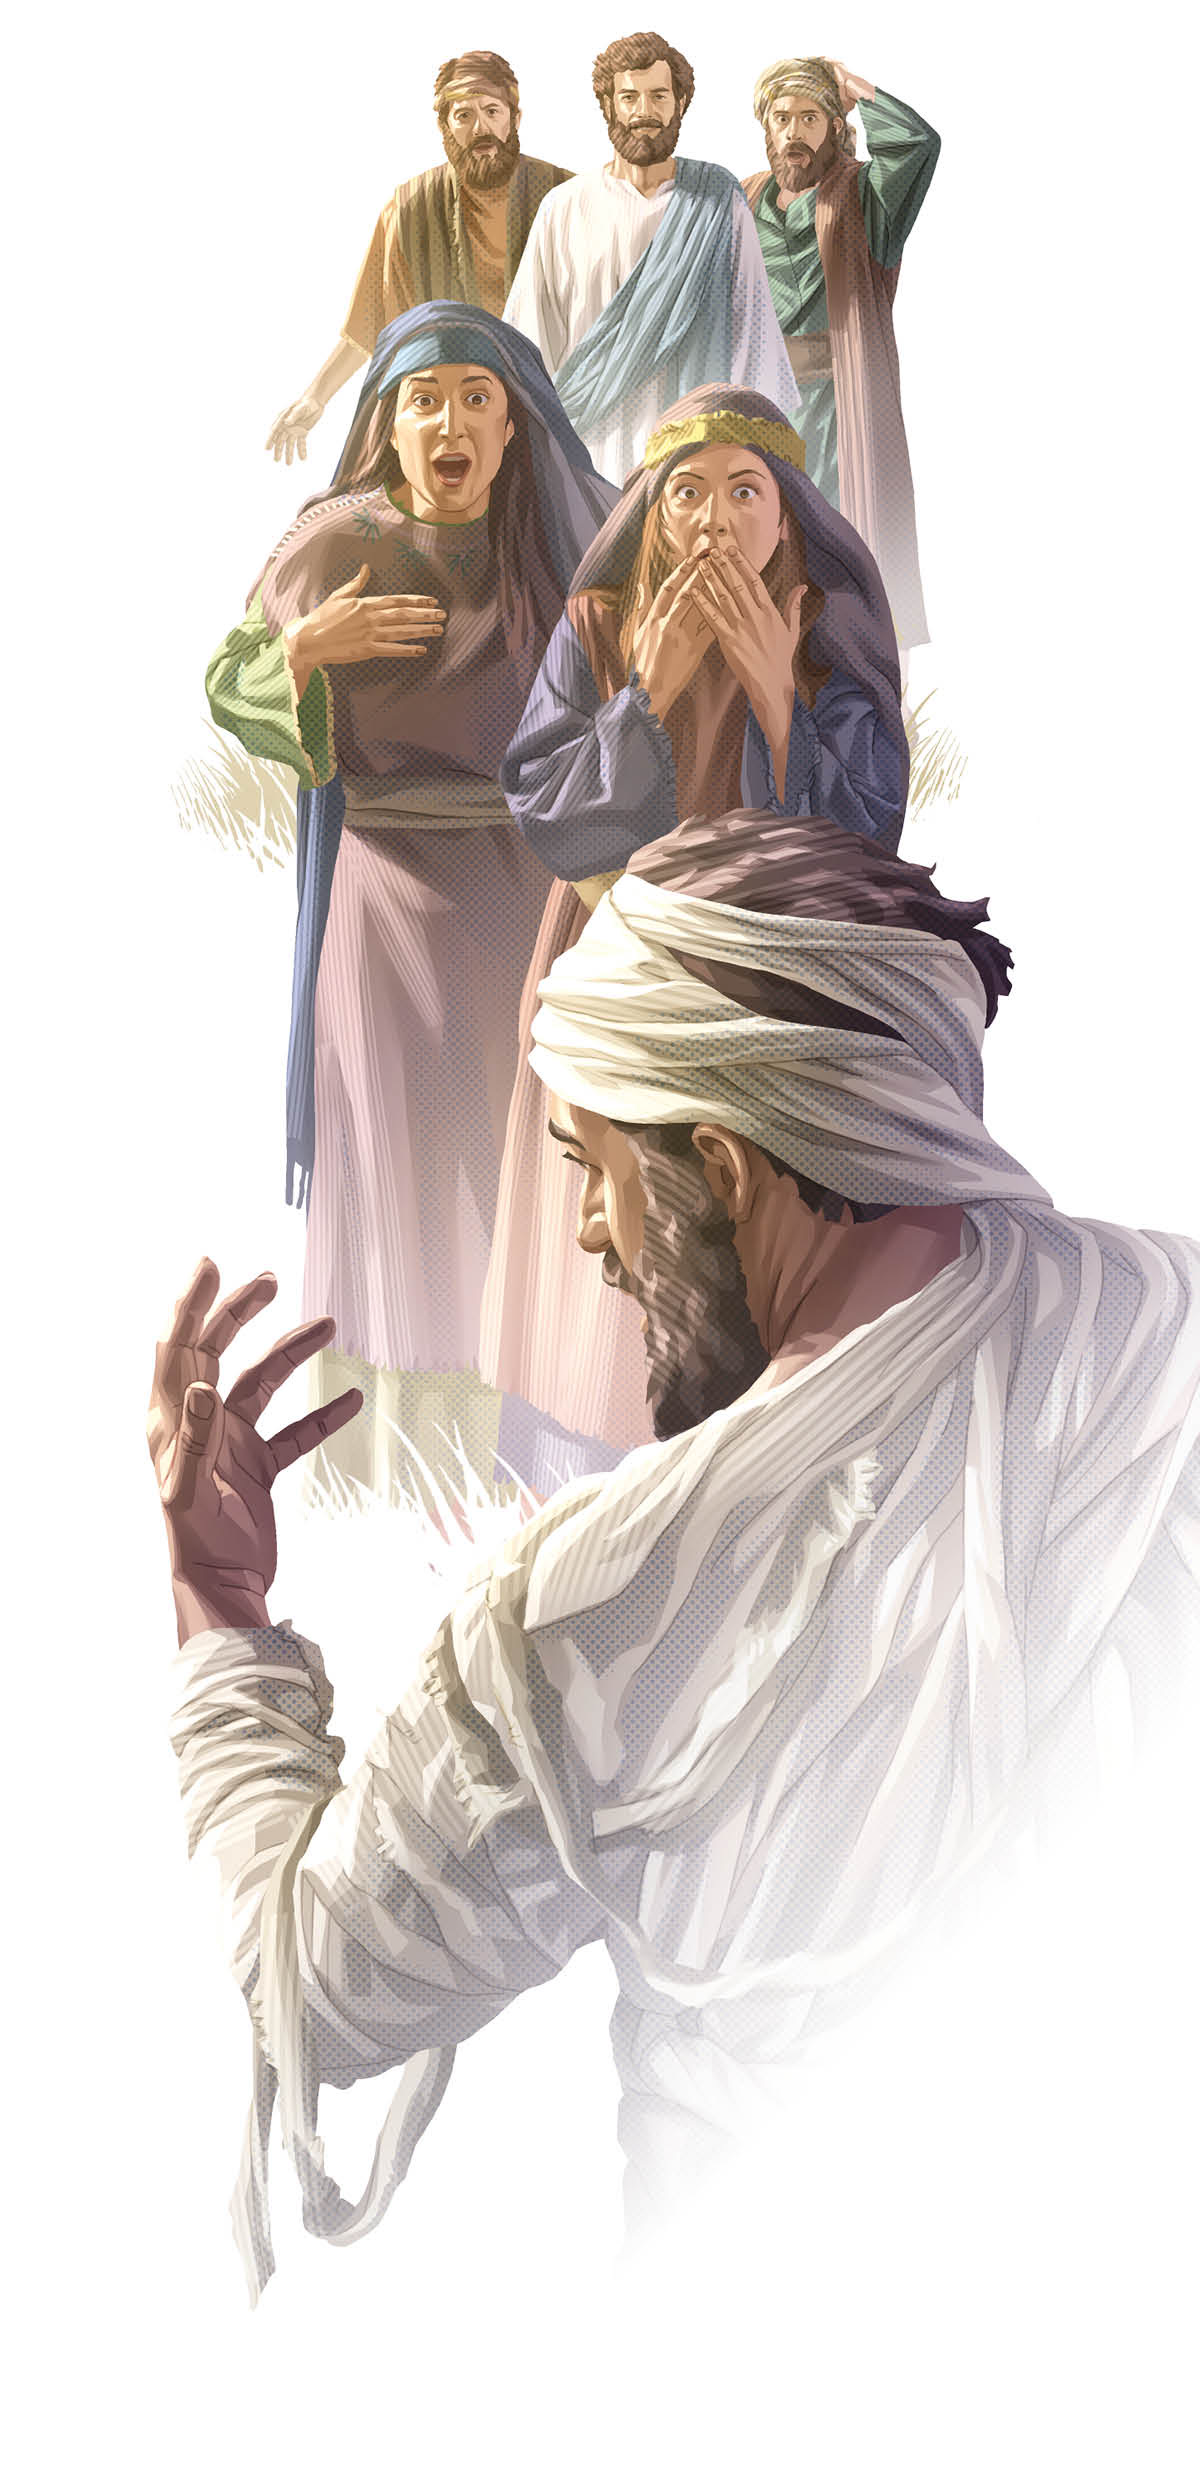 Lazarus wordt door Jezus uit de dood opgewekt terwijl anderen vol verbazing toekijken.